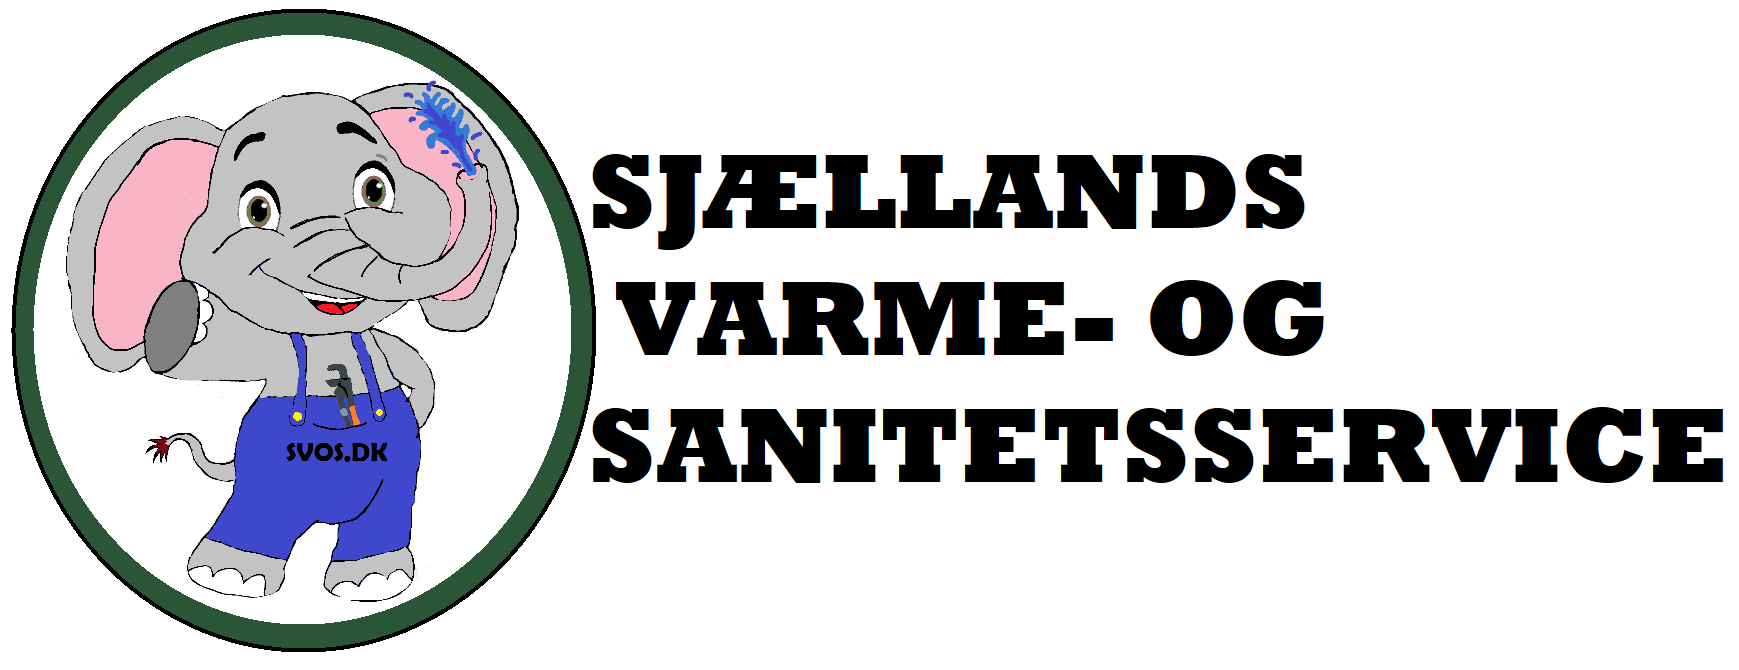 Sjællands Varme- Og Sanitetsservice